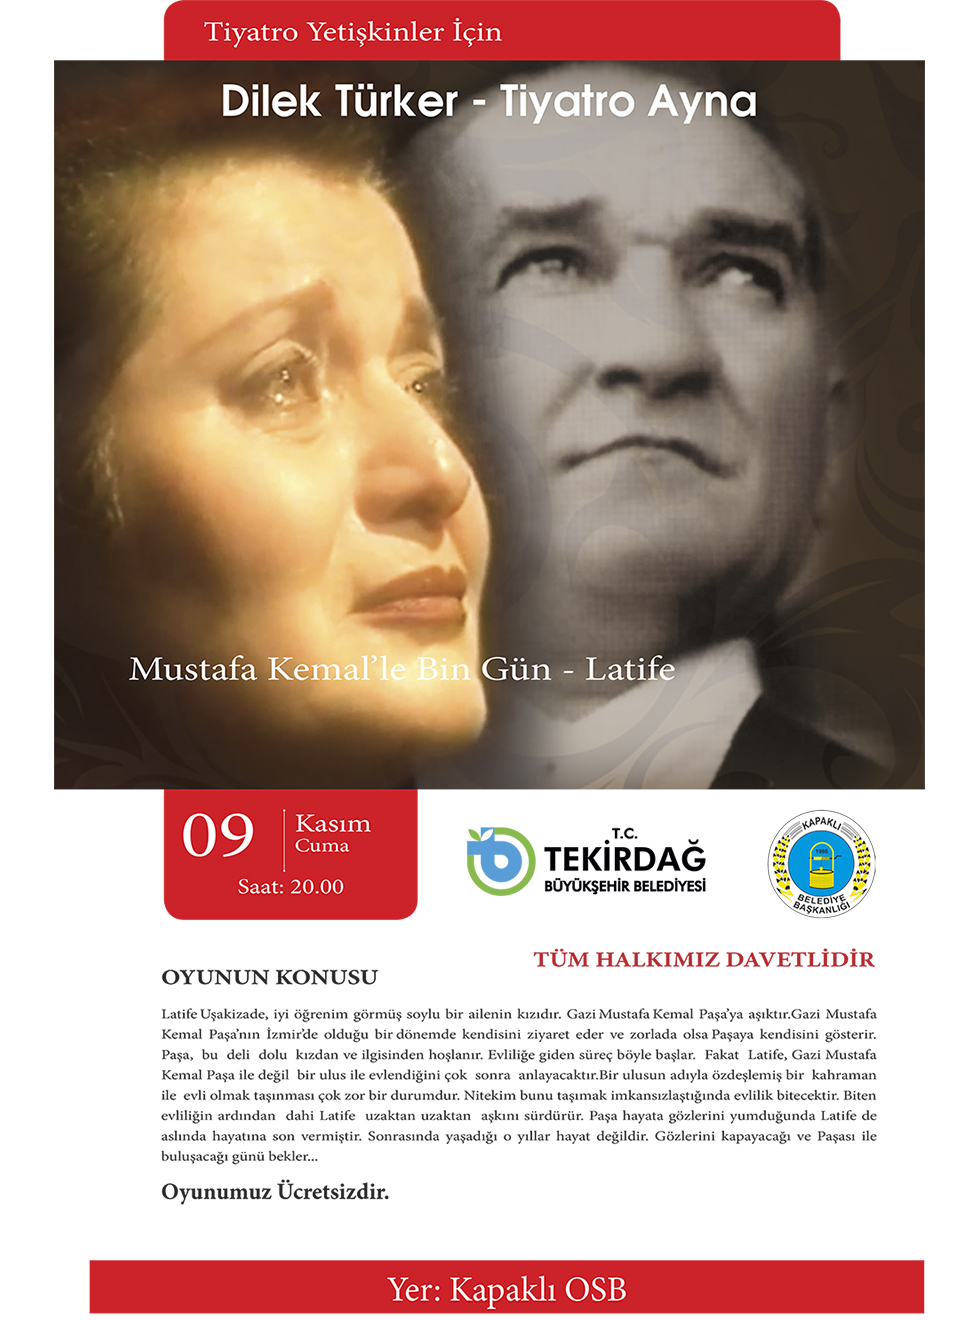 Mustafa Kemal'le Bin Gün Latife Tiyatro Oyunu - Kapaklı